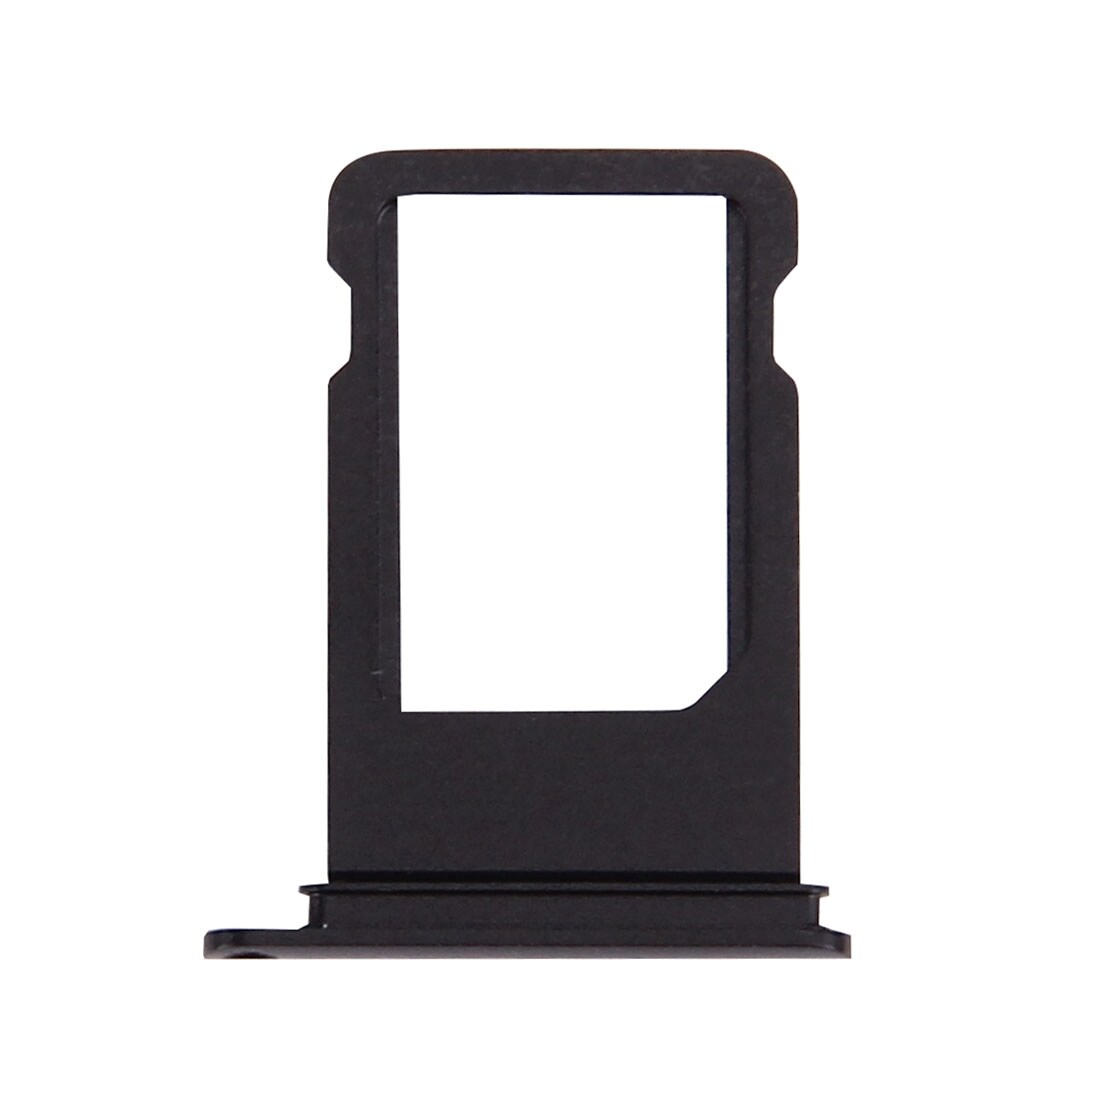 Simkortshållare för iPhone 7 Plus - svart